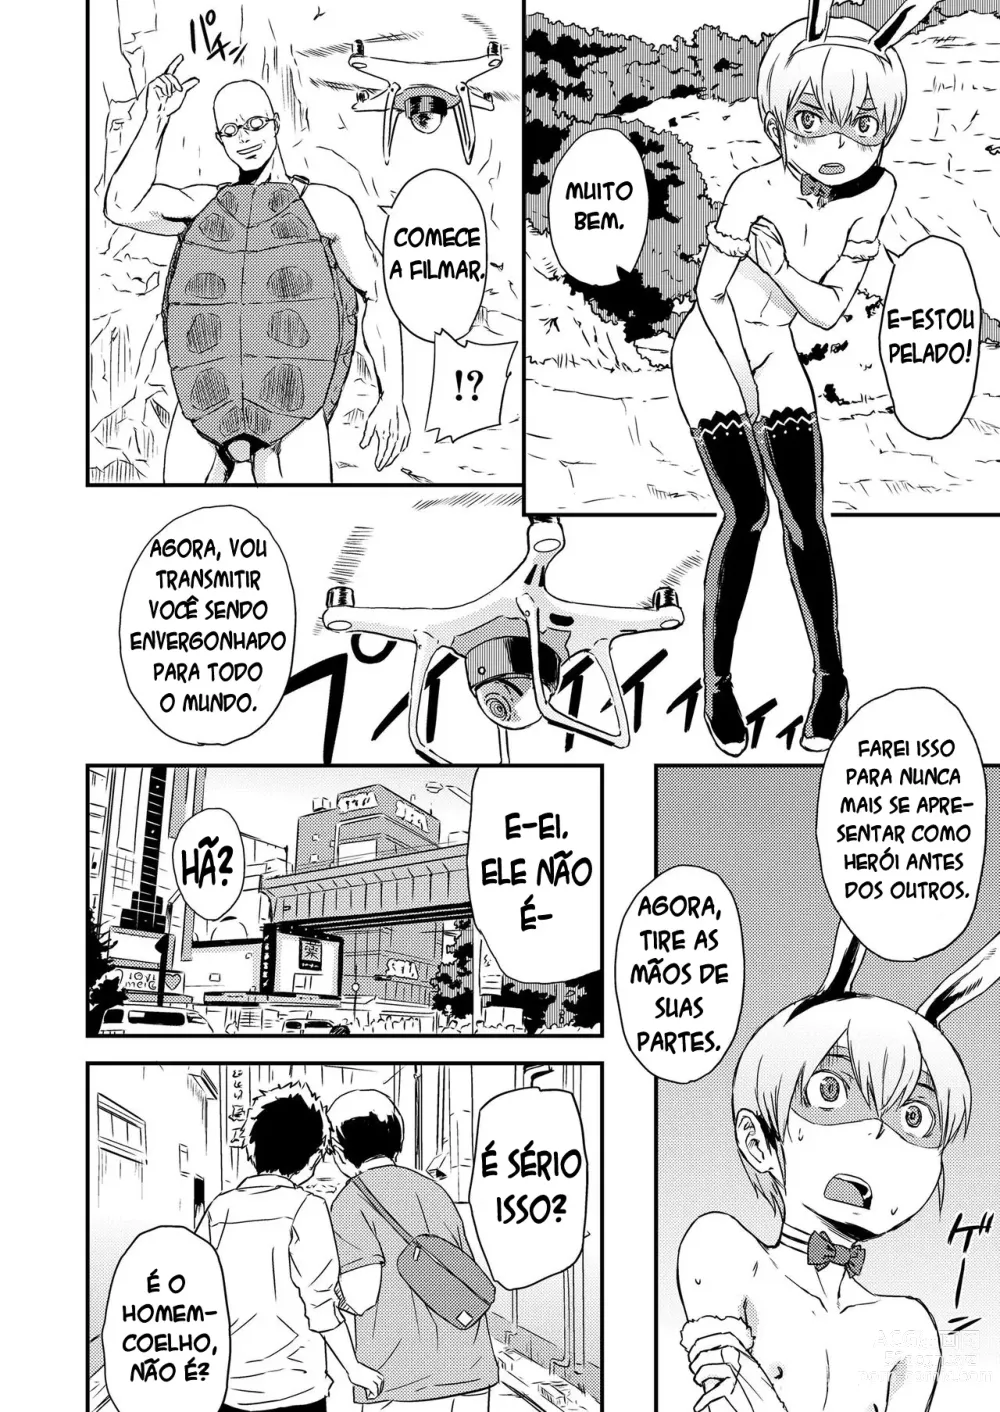 Page 4 of manga Vença! Homem-coelho